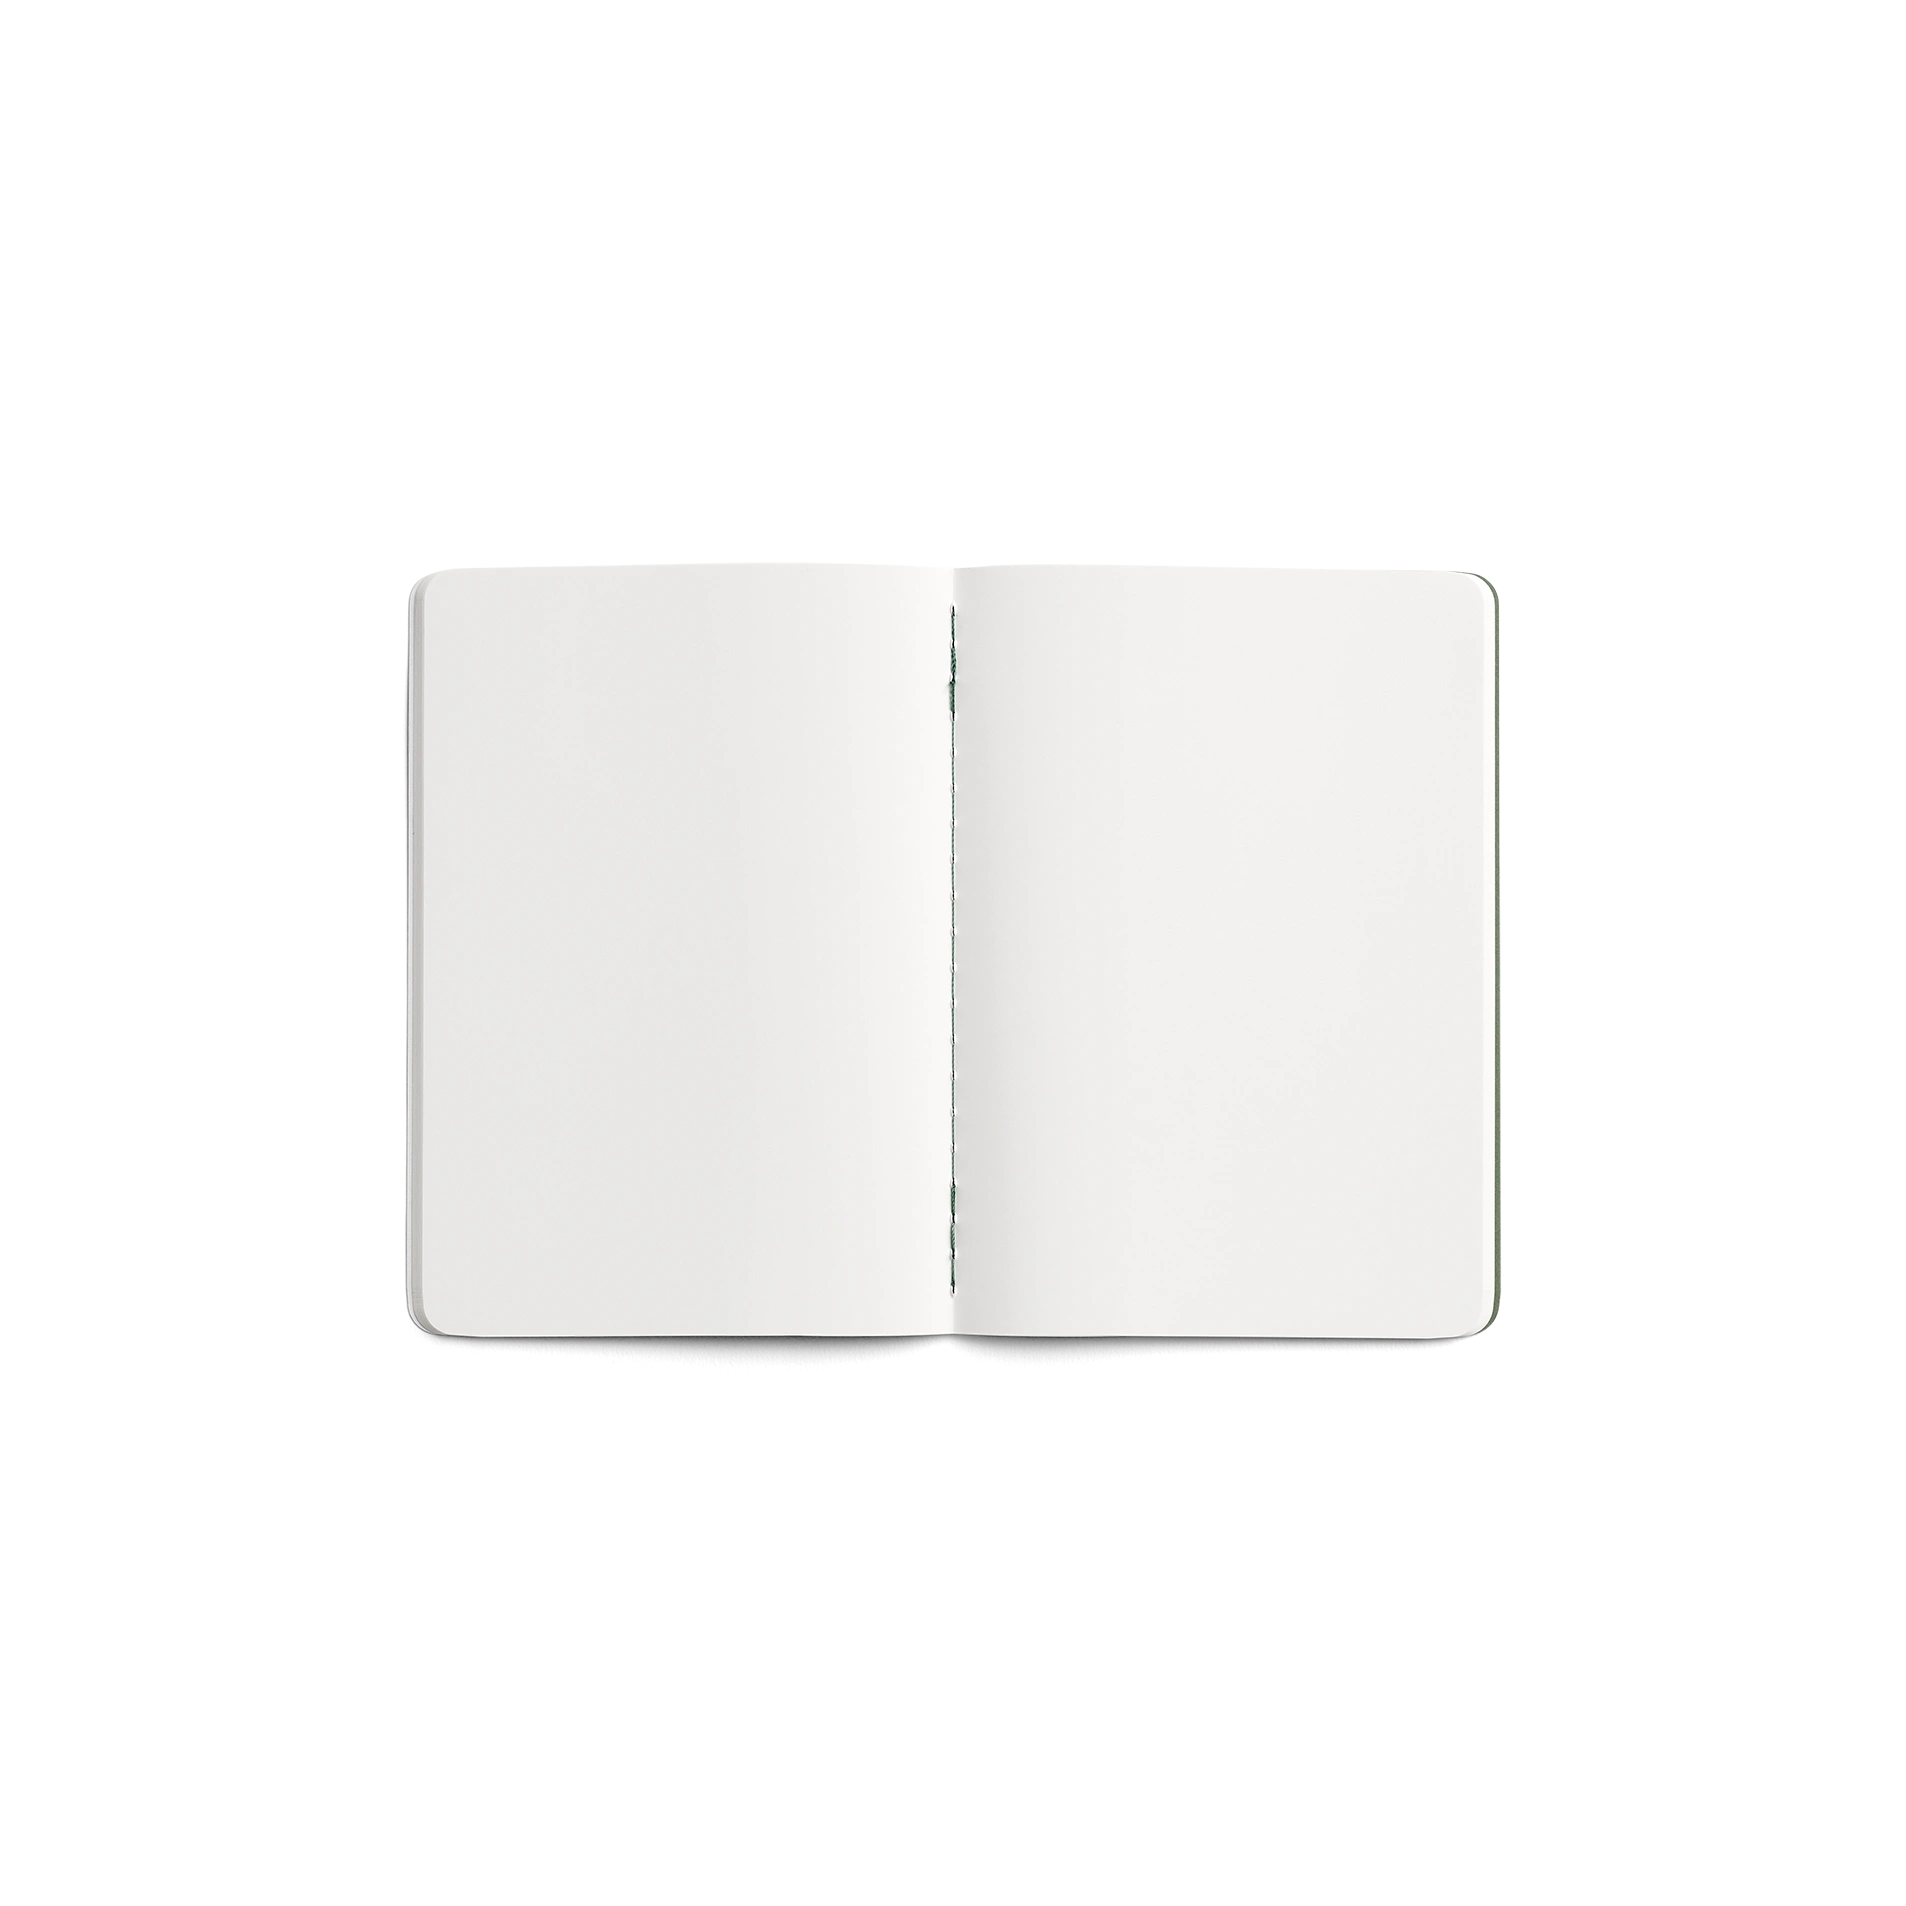 Karst Stone Paper Pocket Journal